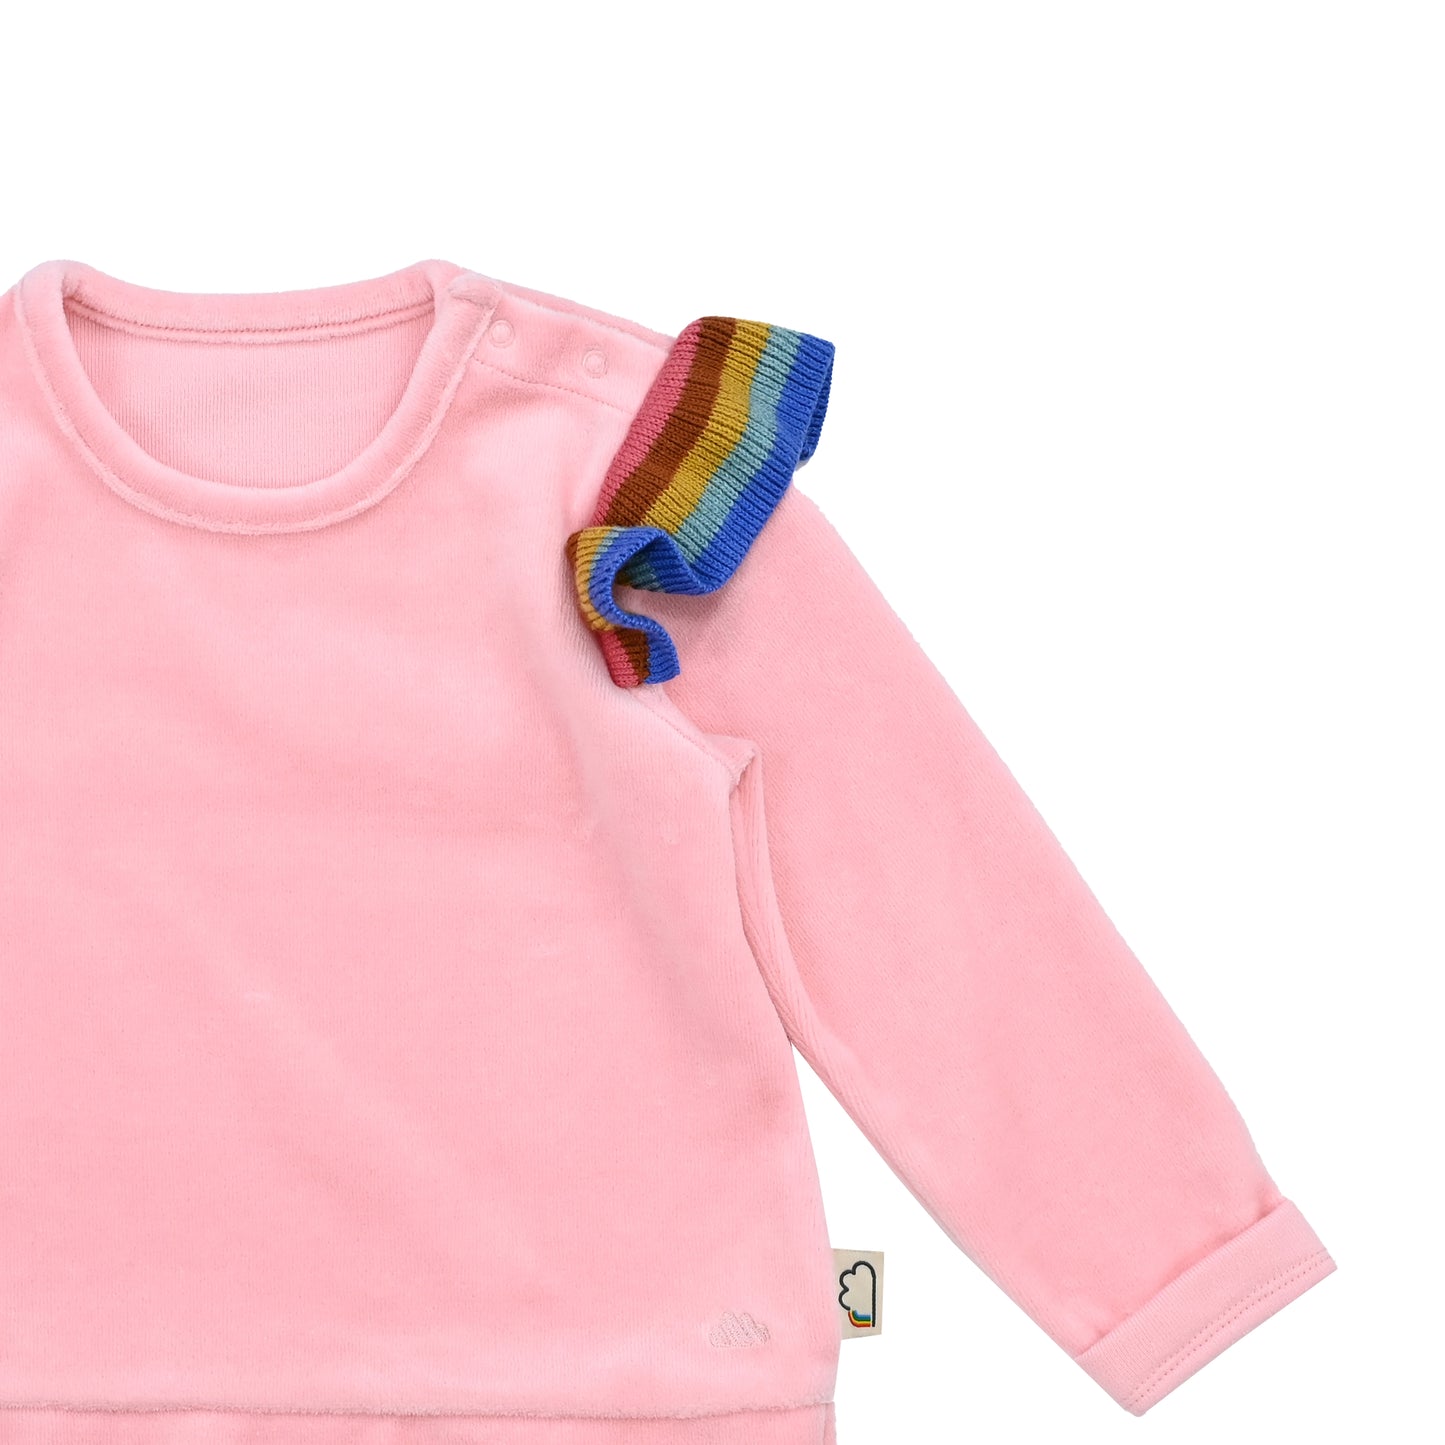 嬰兒服裝 - 純色拼彩虹針織運動套裝